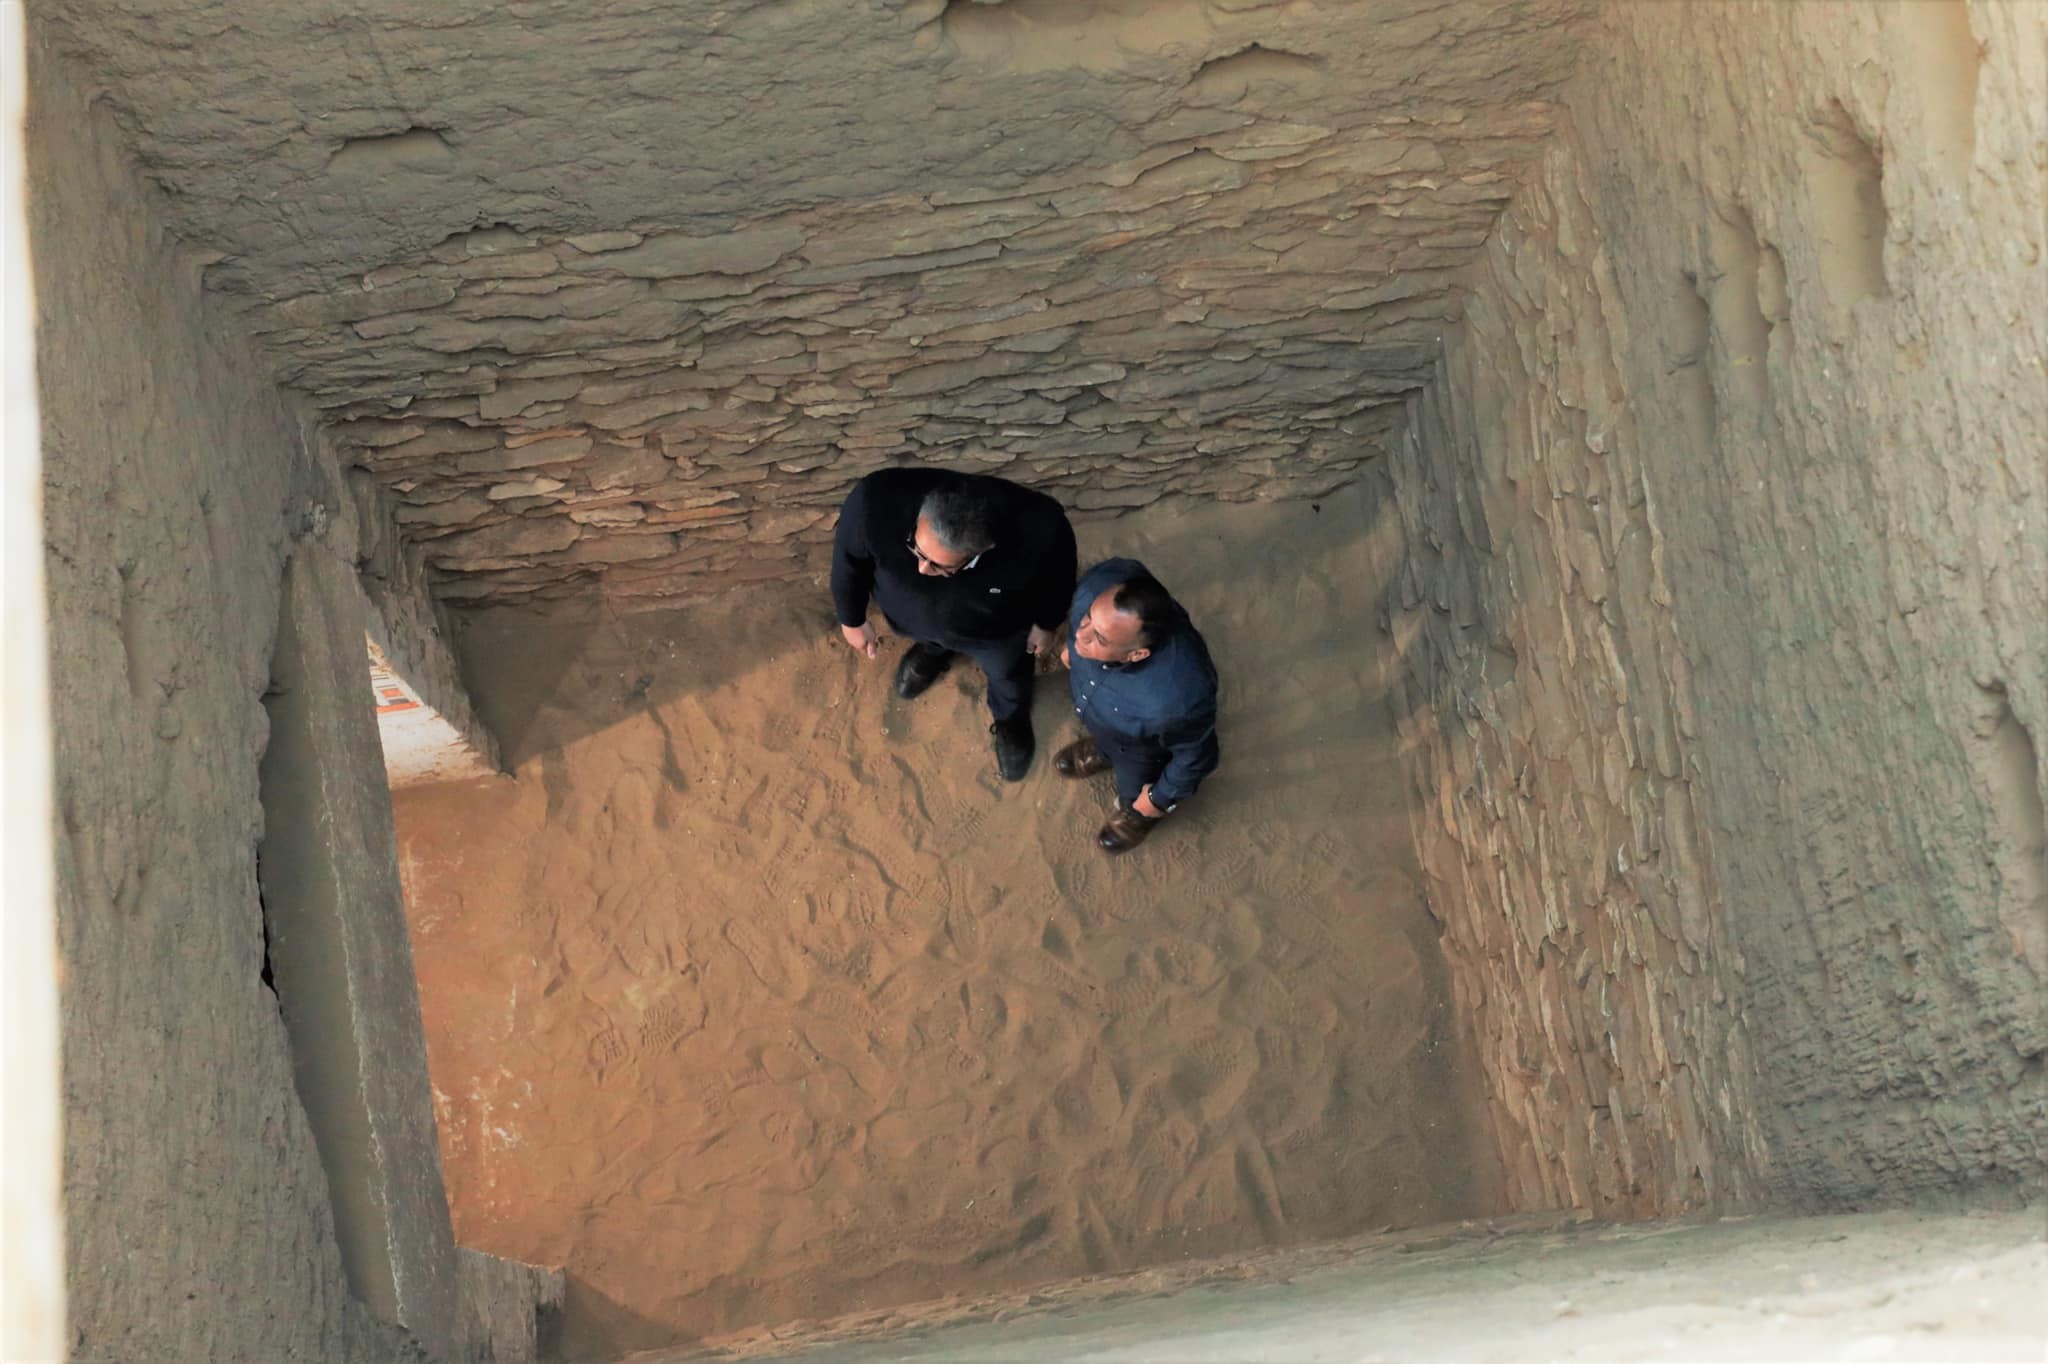 Tumbas encontradas no Egito contém achados que datam do final do Império Antigo (Foto: Reprodução/Facebook/Ministry of Tourism and Antiquities)